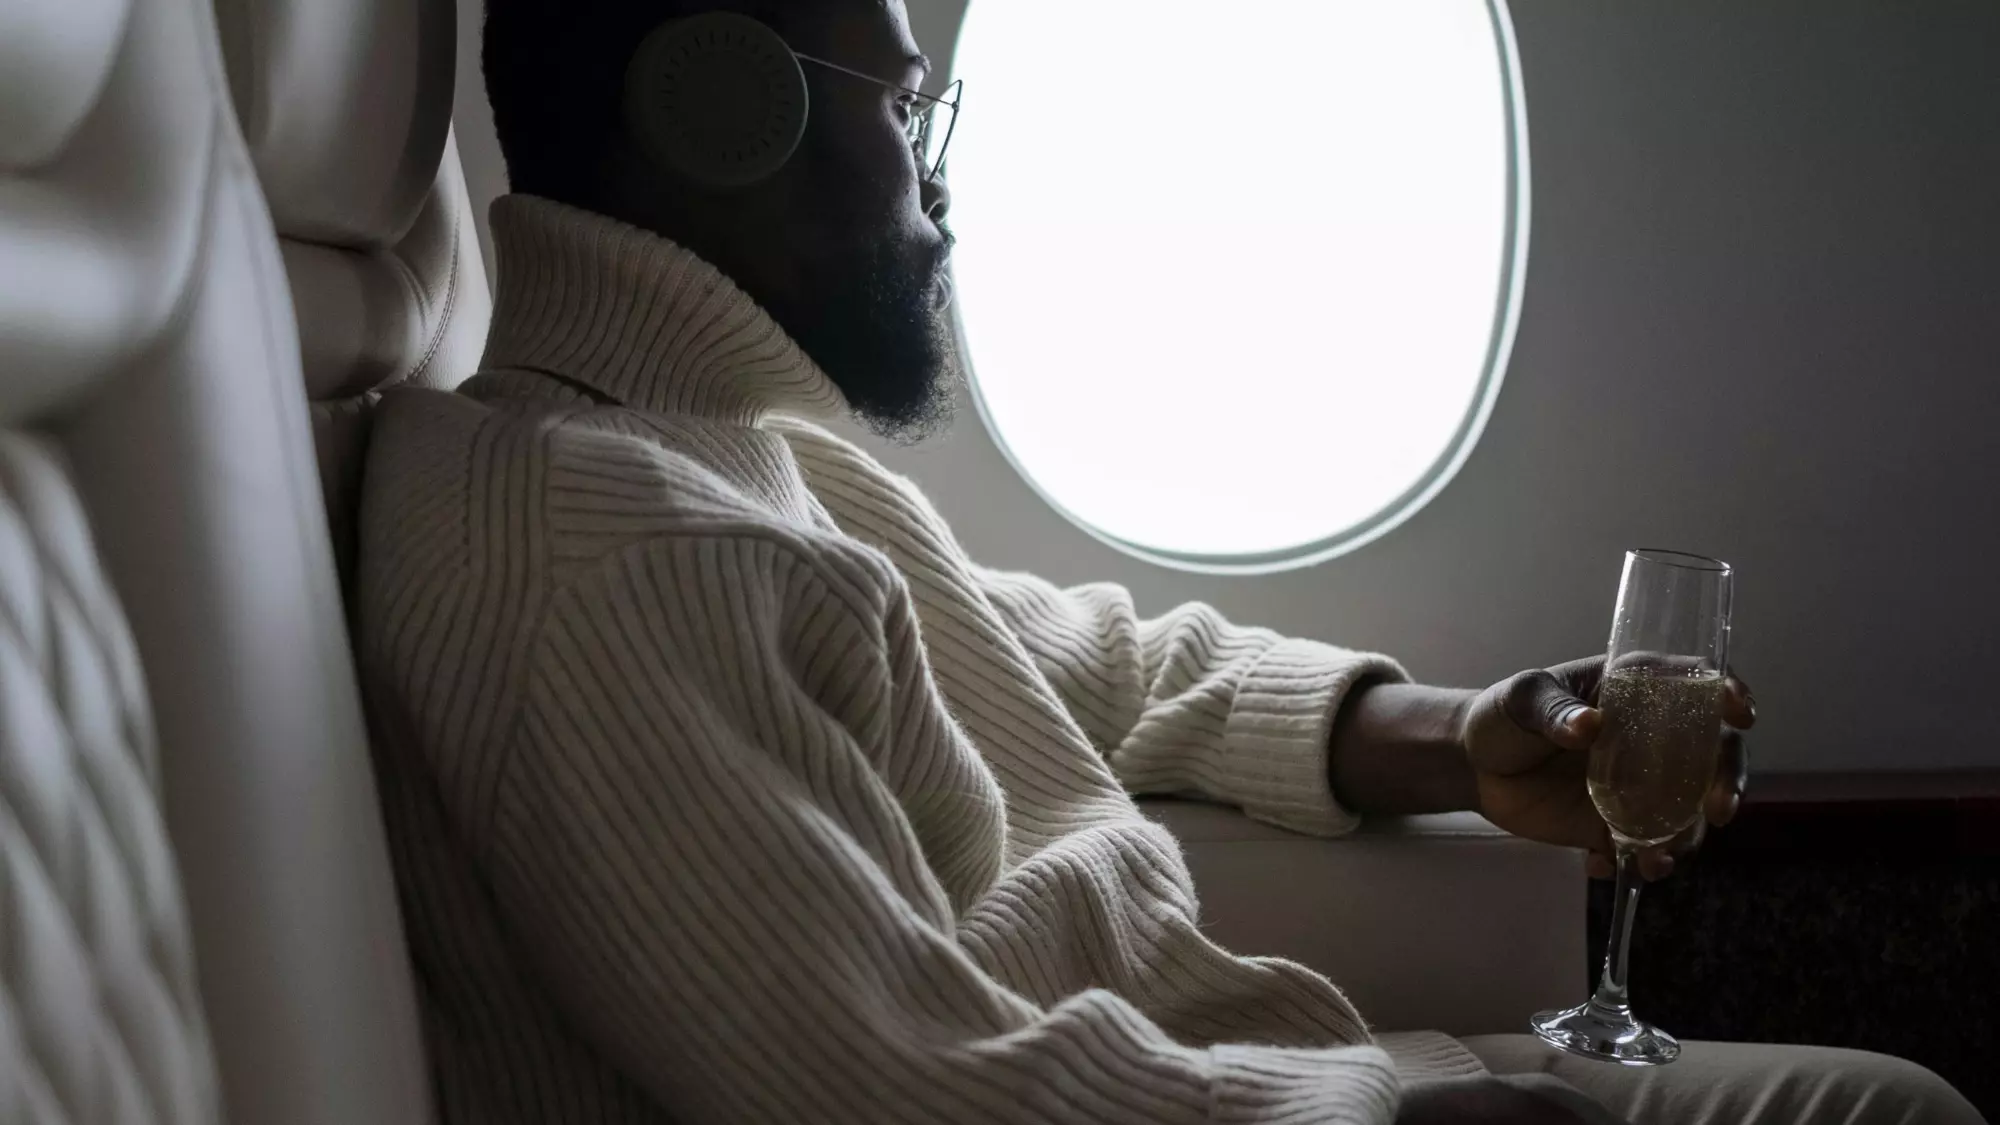 Még a fiatalok számára is halálos lehet alkoholt inni a repülőn